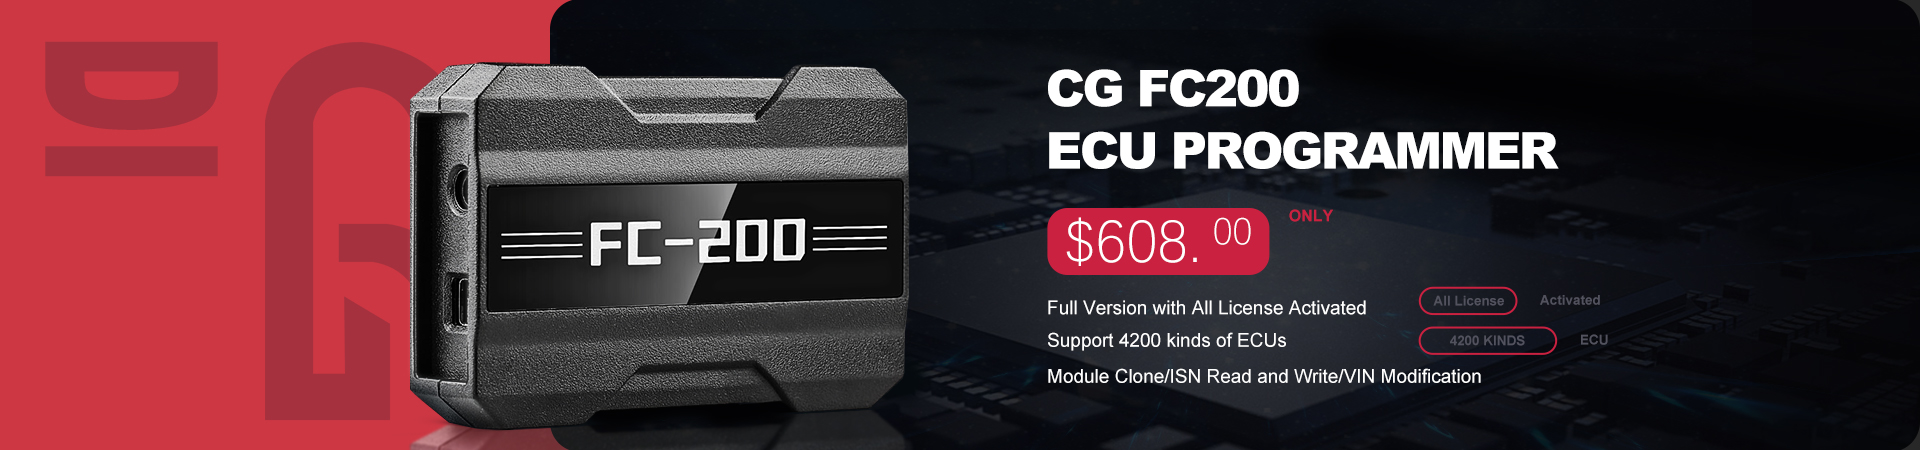 CG FC200 ECU Programmer Full Version Tax Free